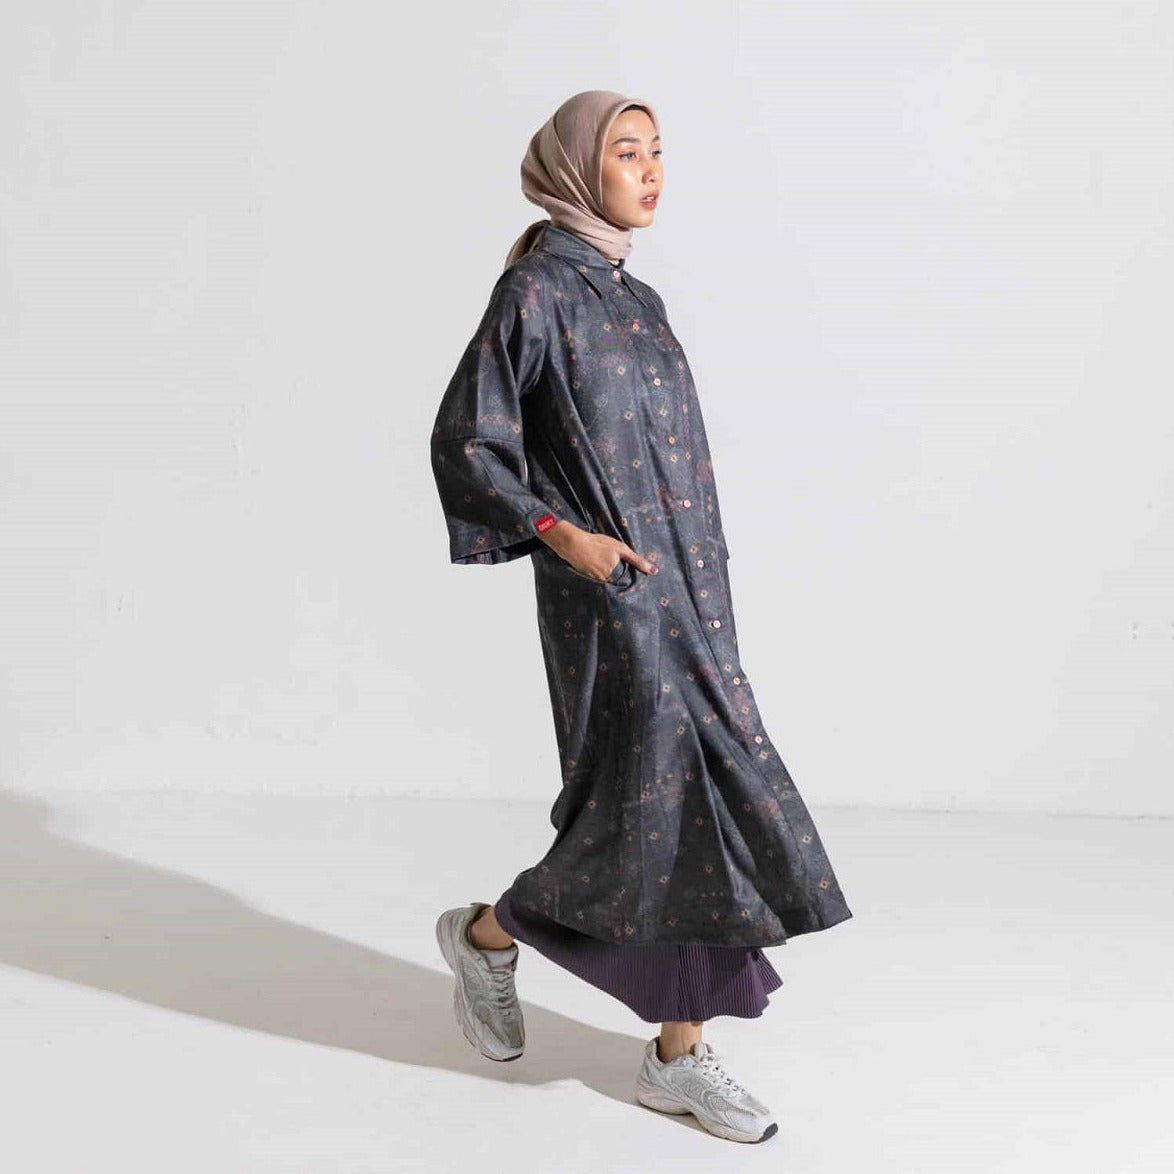 Dress Wanita muslim Dauky Gamis M Dress Bohe Series - Darkgrey